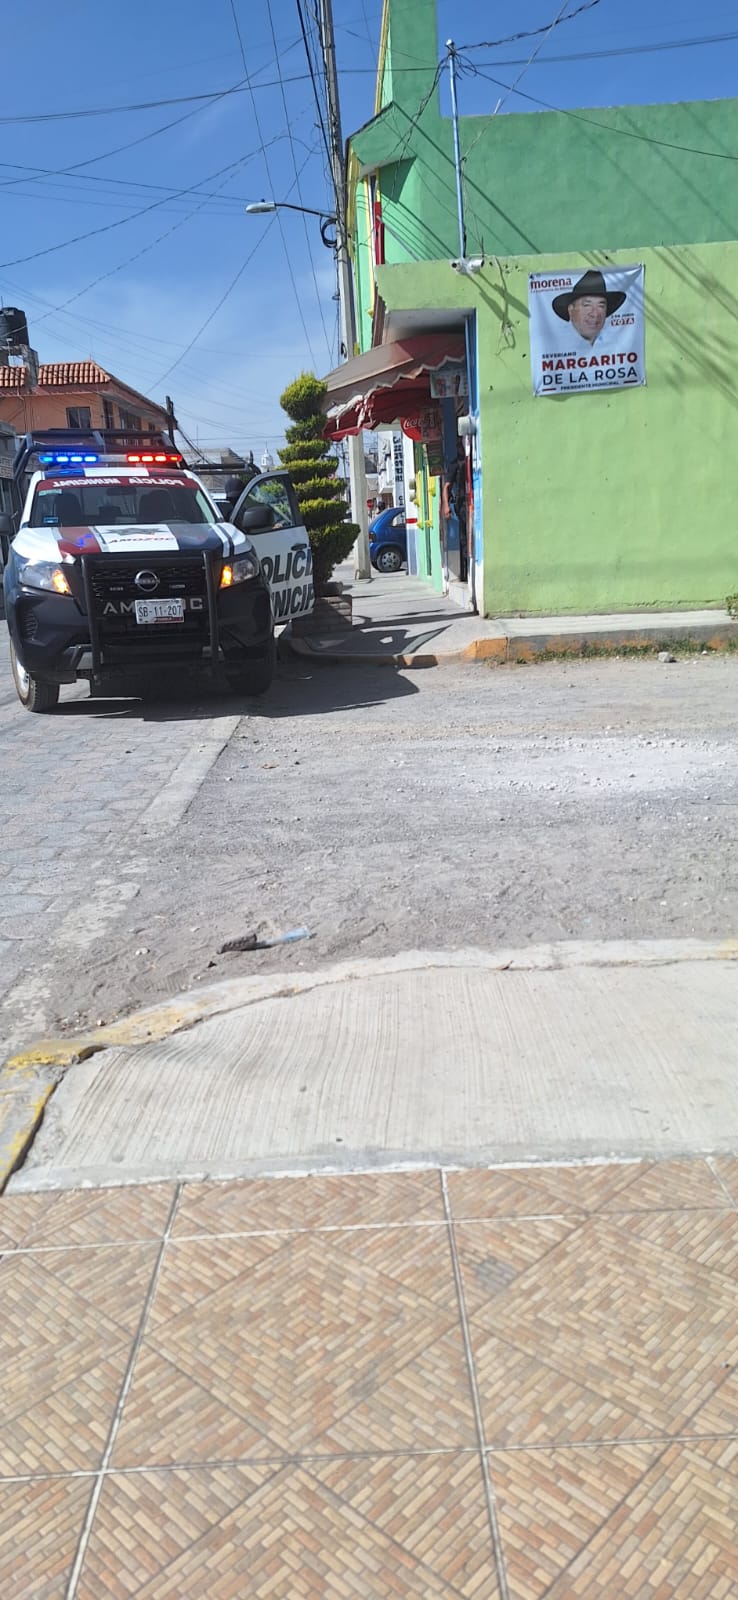 Sigue la violencia en Amozoc: Hijo atropella a motociclista y el padre apuñala a 2 personas